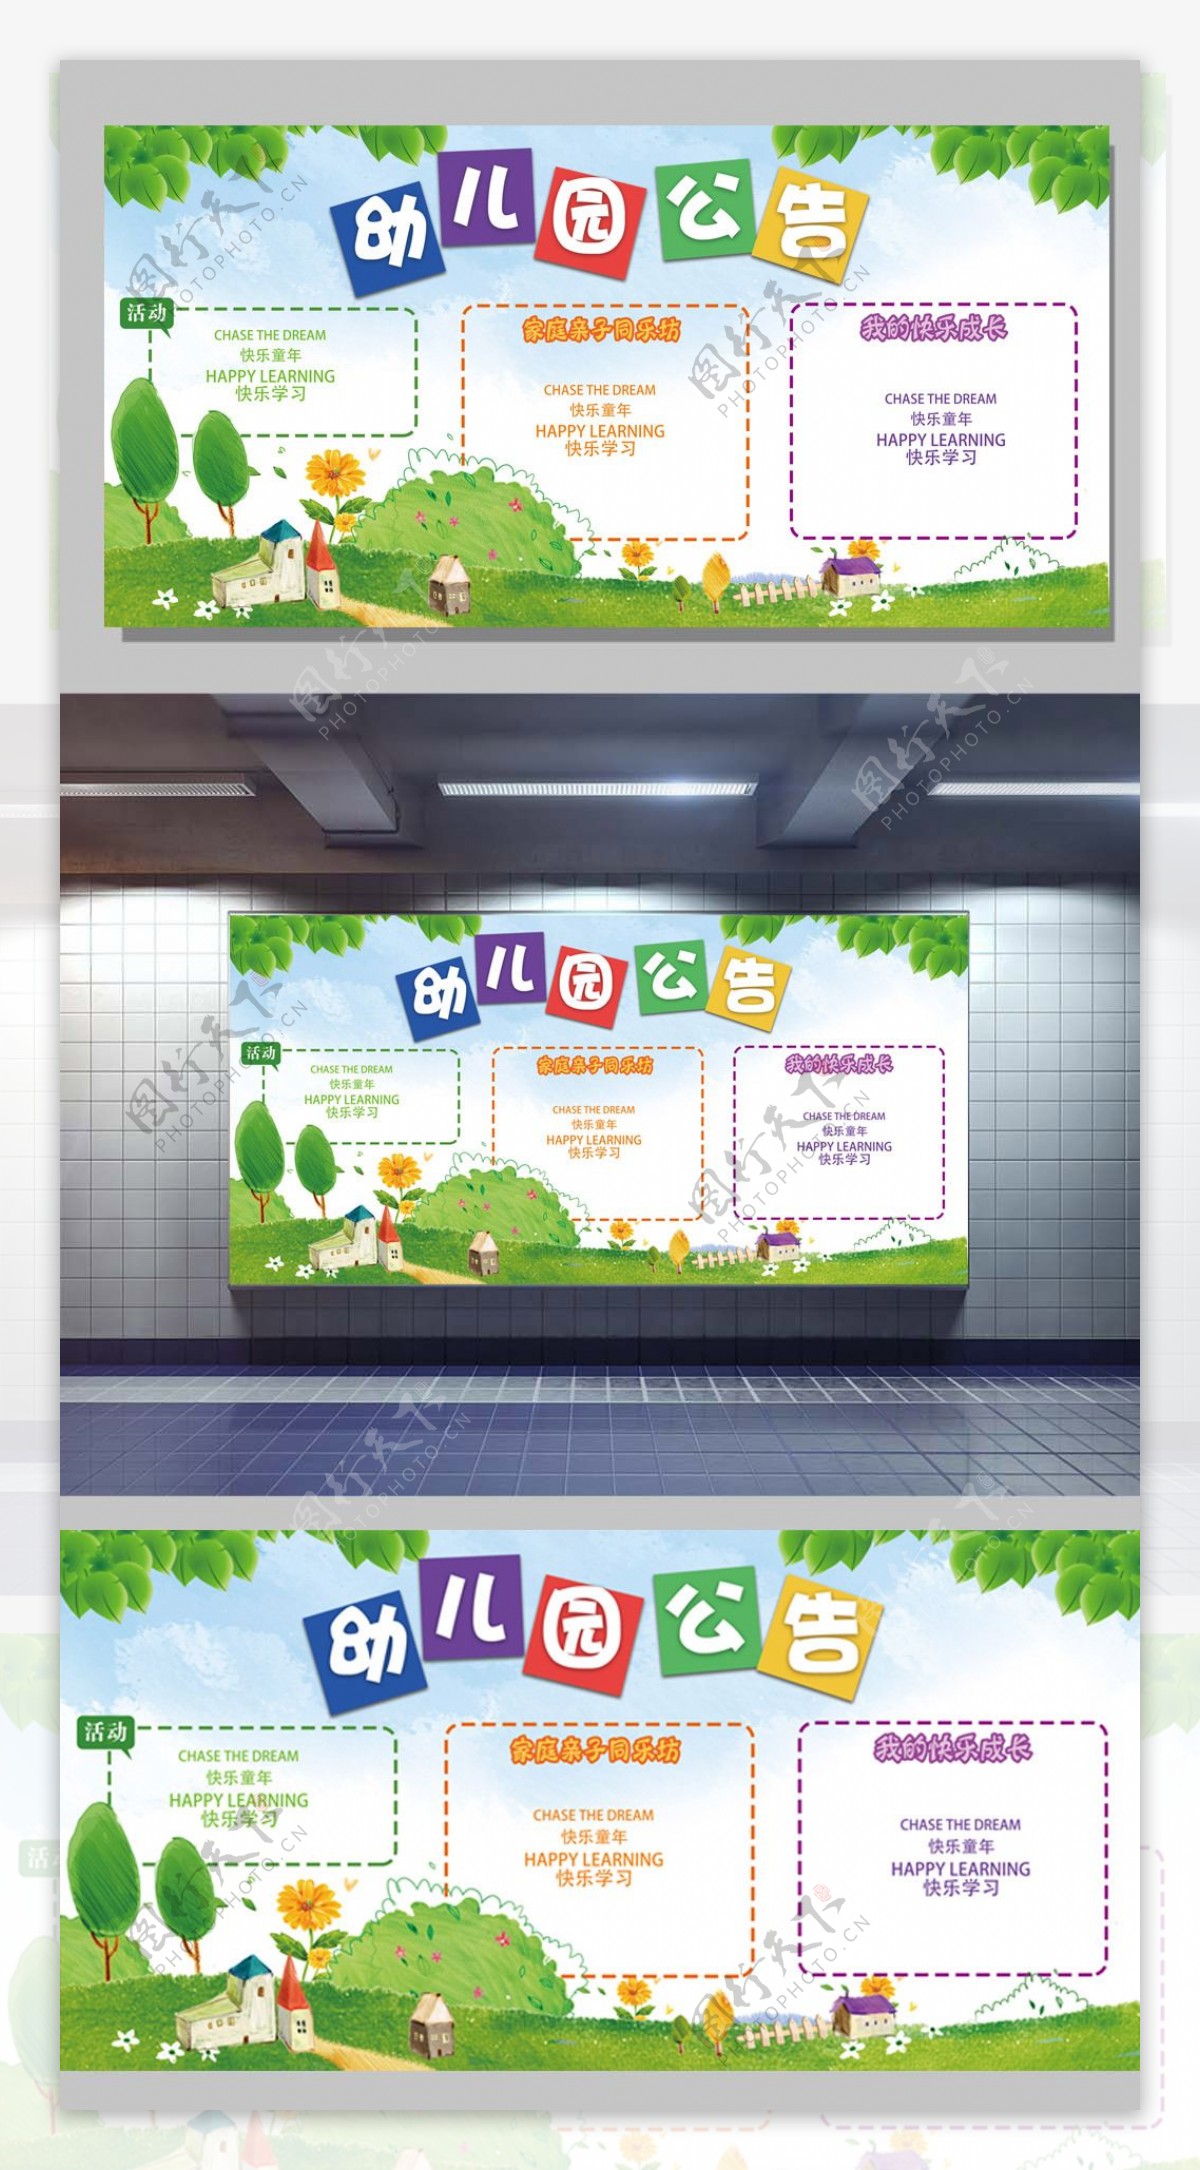 2017幼儿园公告卡通展板设计